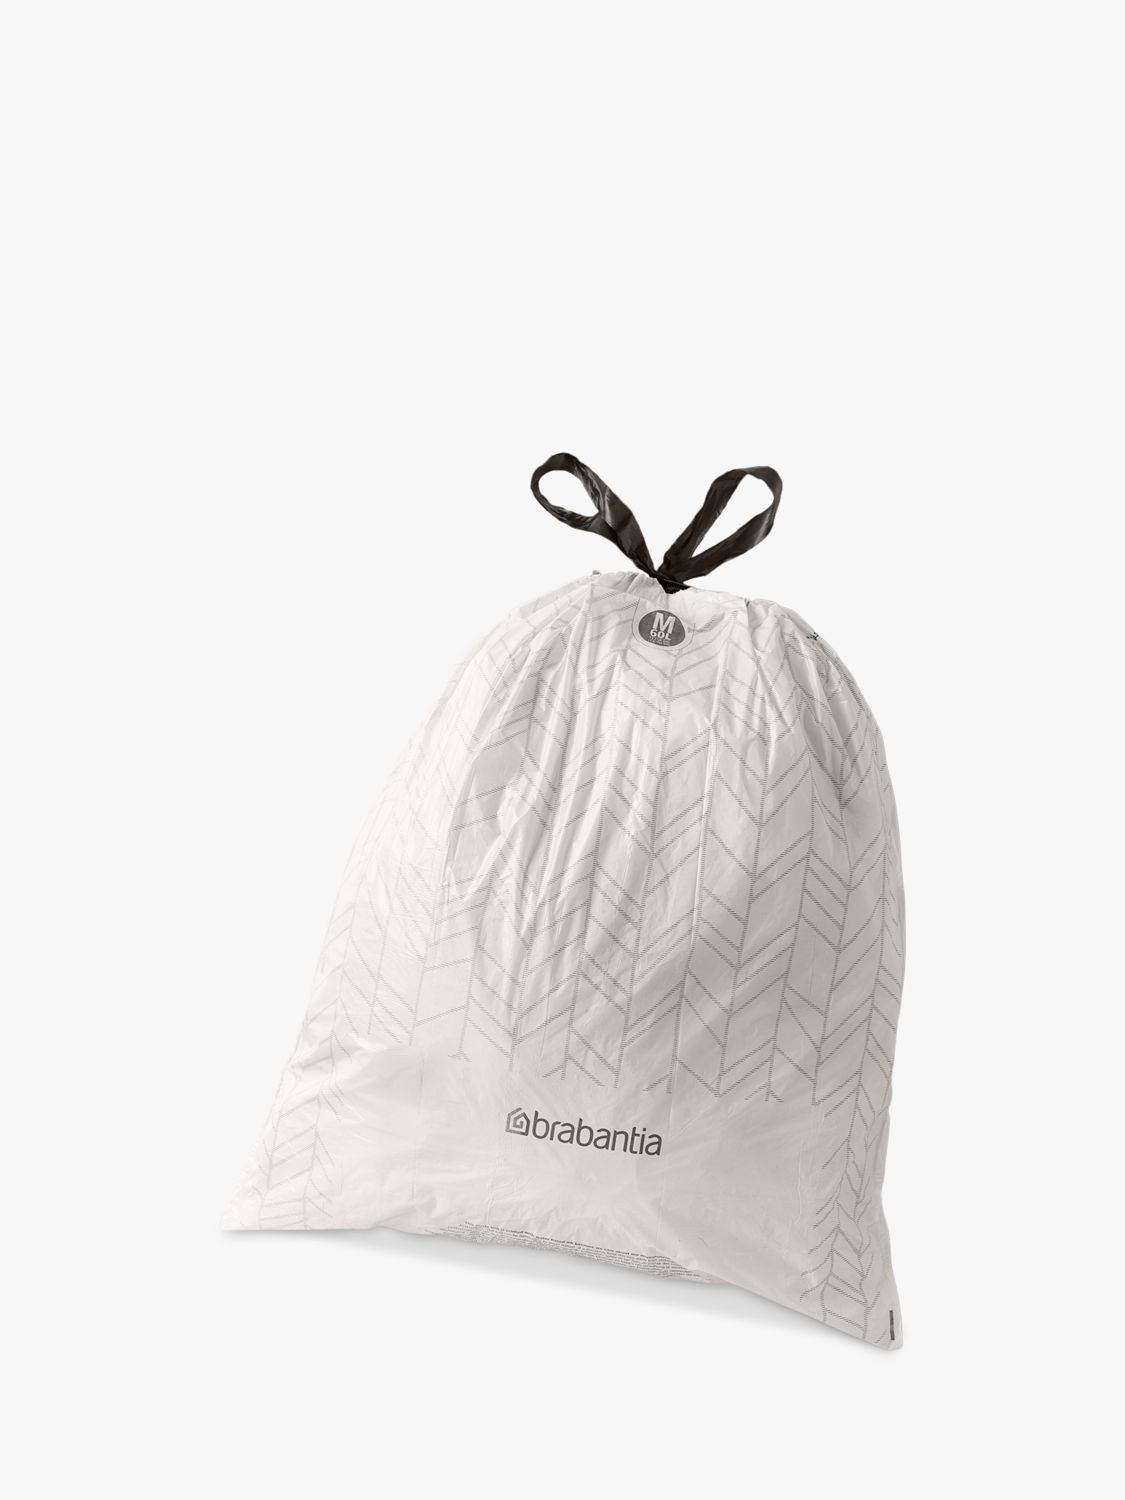 Brabantia PerfectFit Trash Bags, Code M in 2023